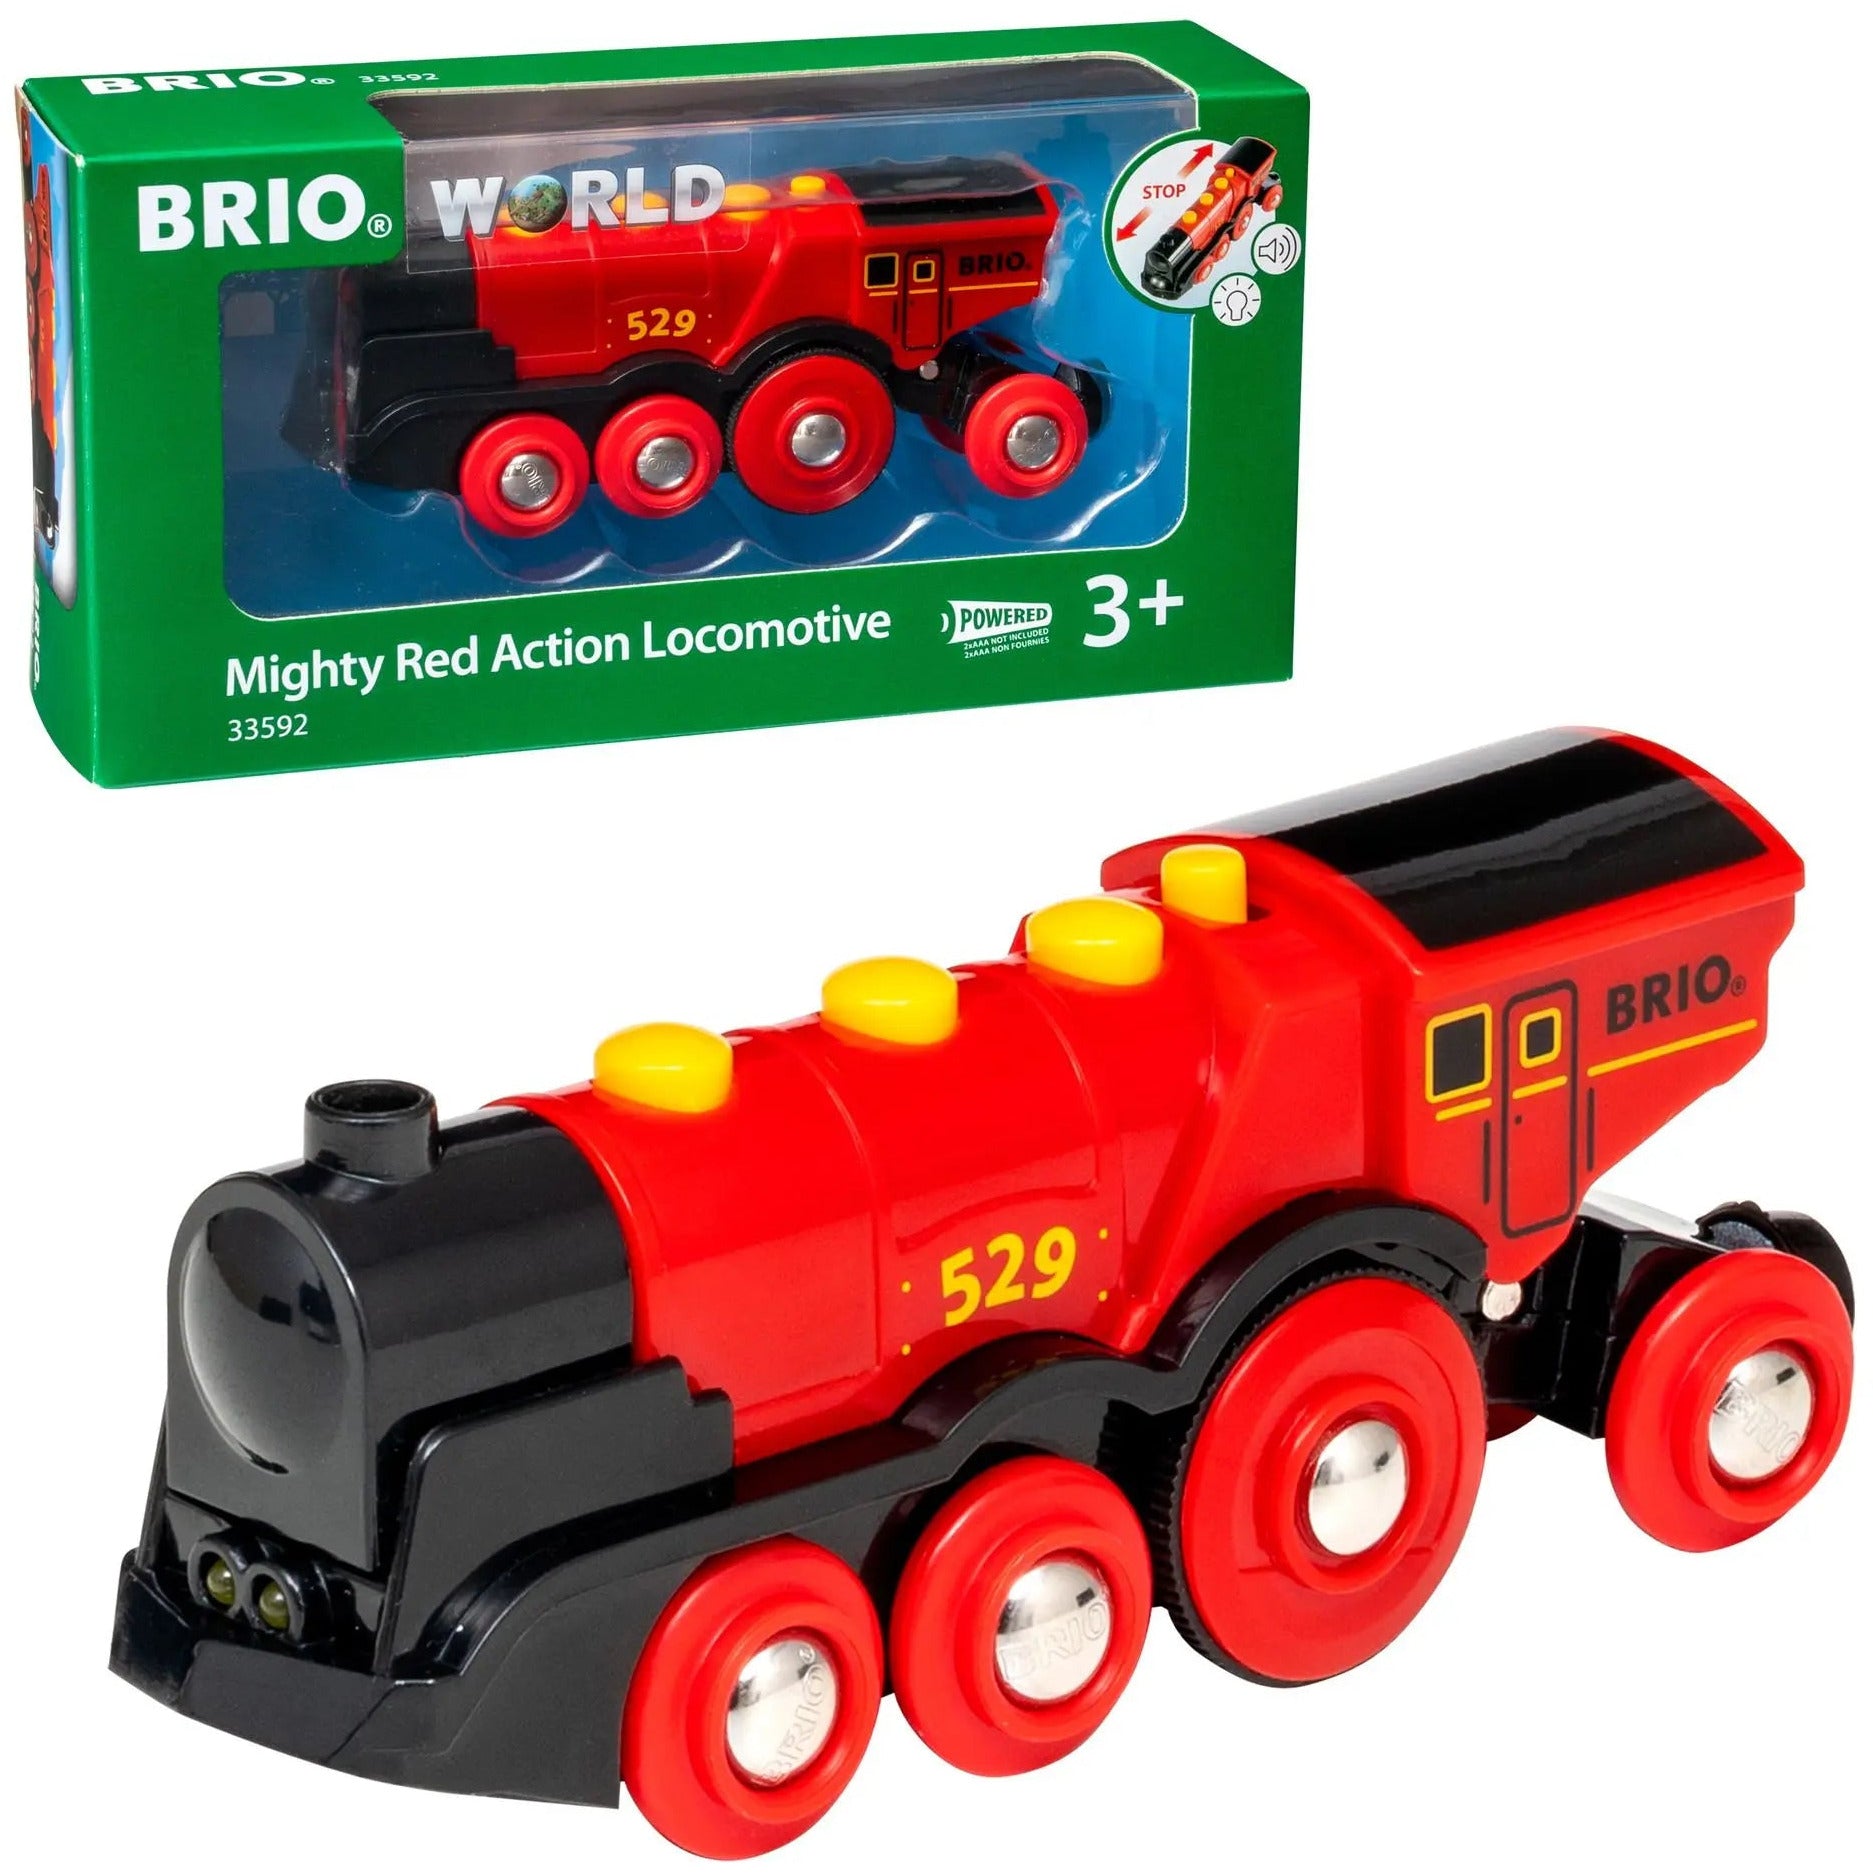 Brio World Mighty Red Action Locomotive BRIO